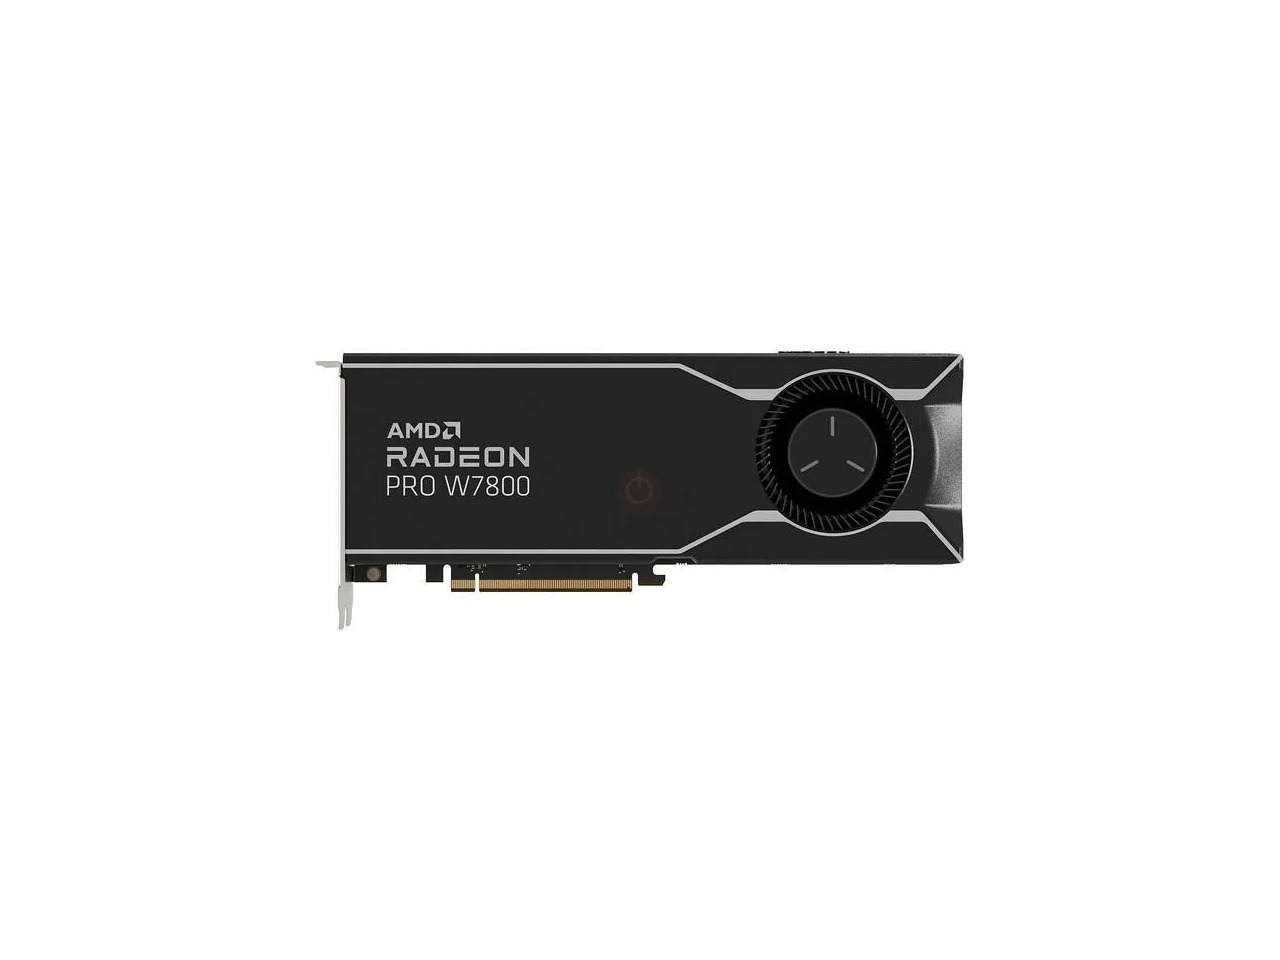 AMD Radeon Pro W7800 100-300000075 32GB 256-bit GDDR6 with ECC PCI Express 4.0